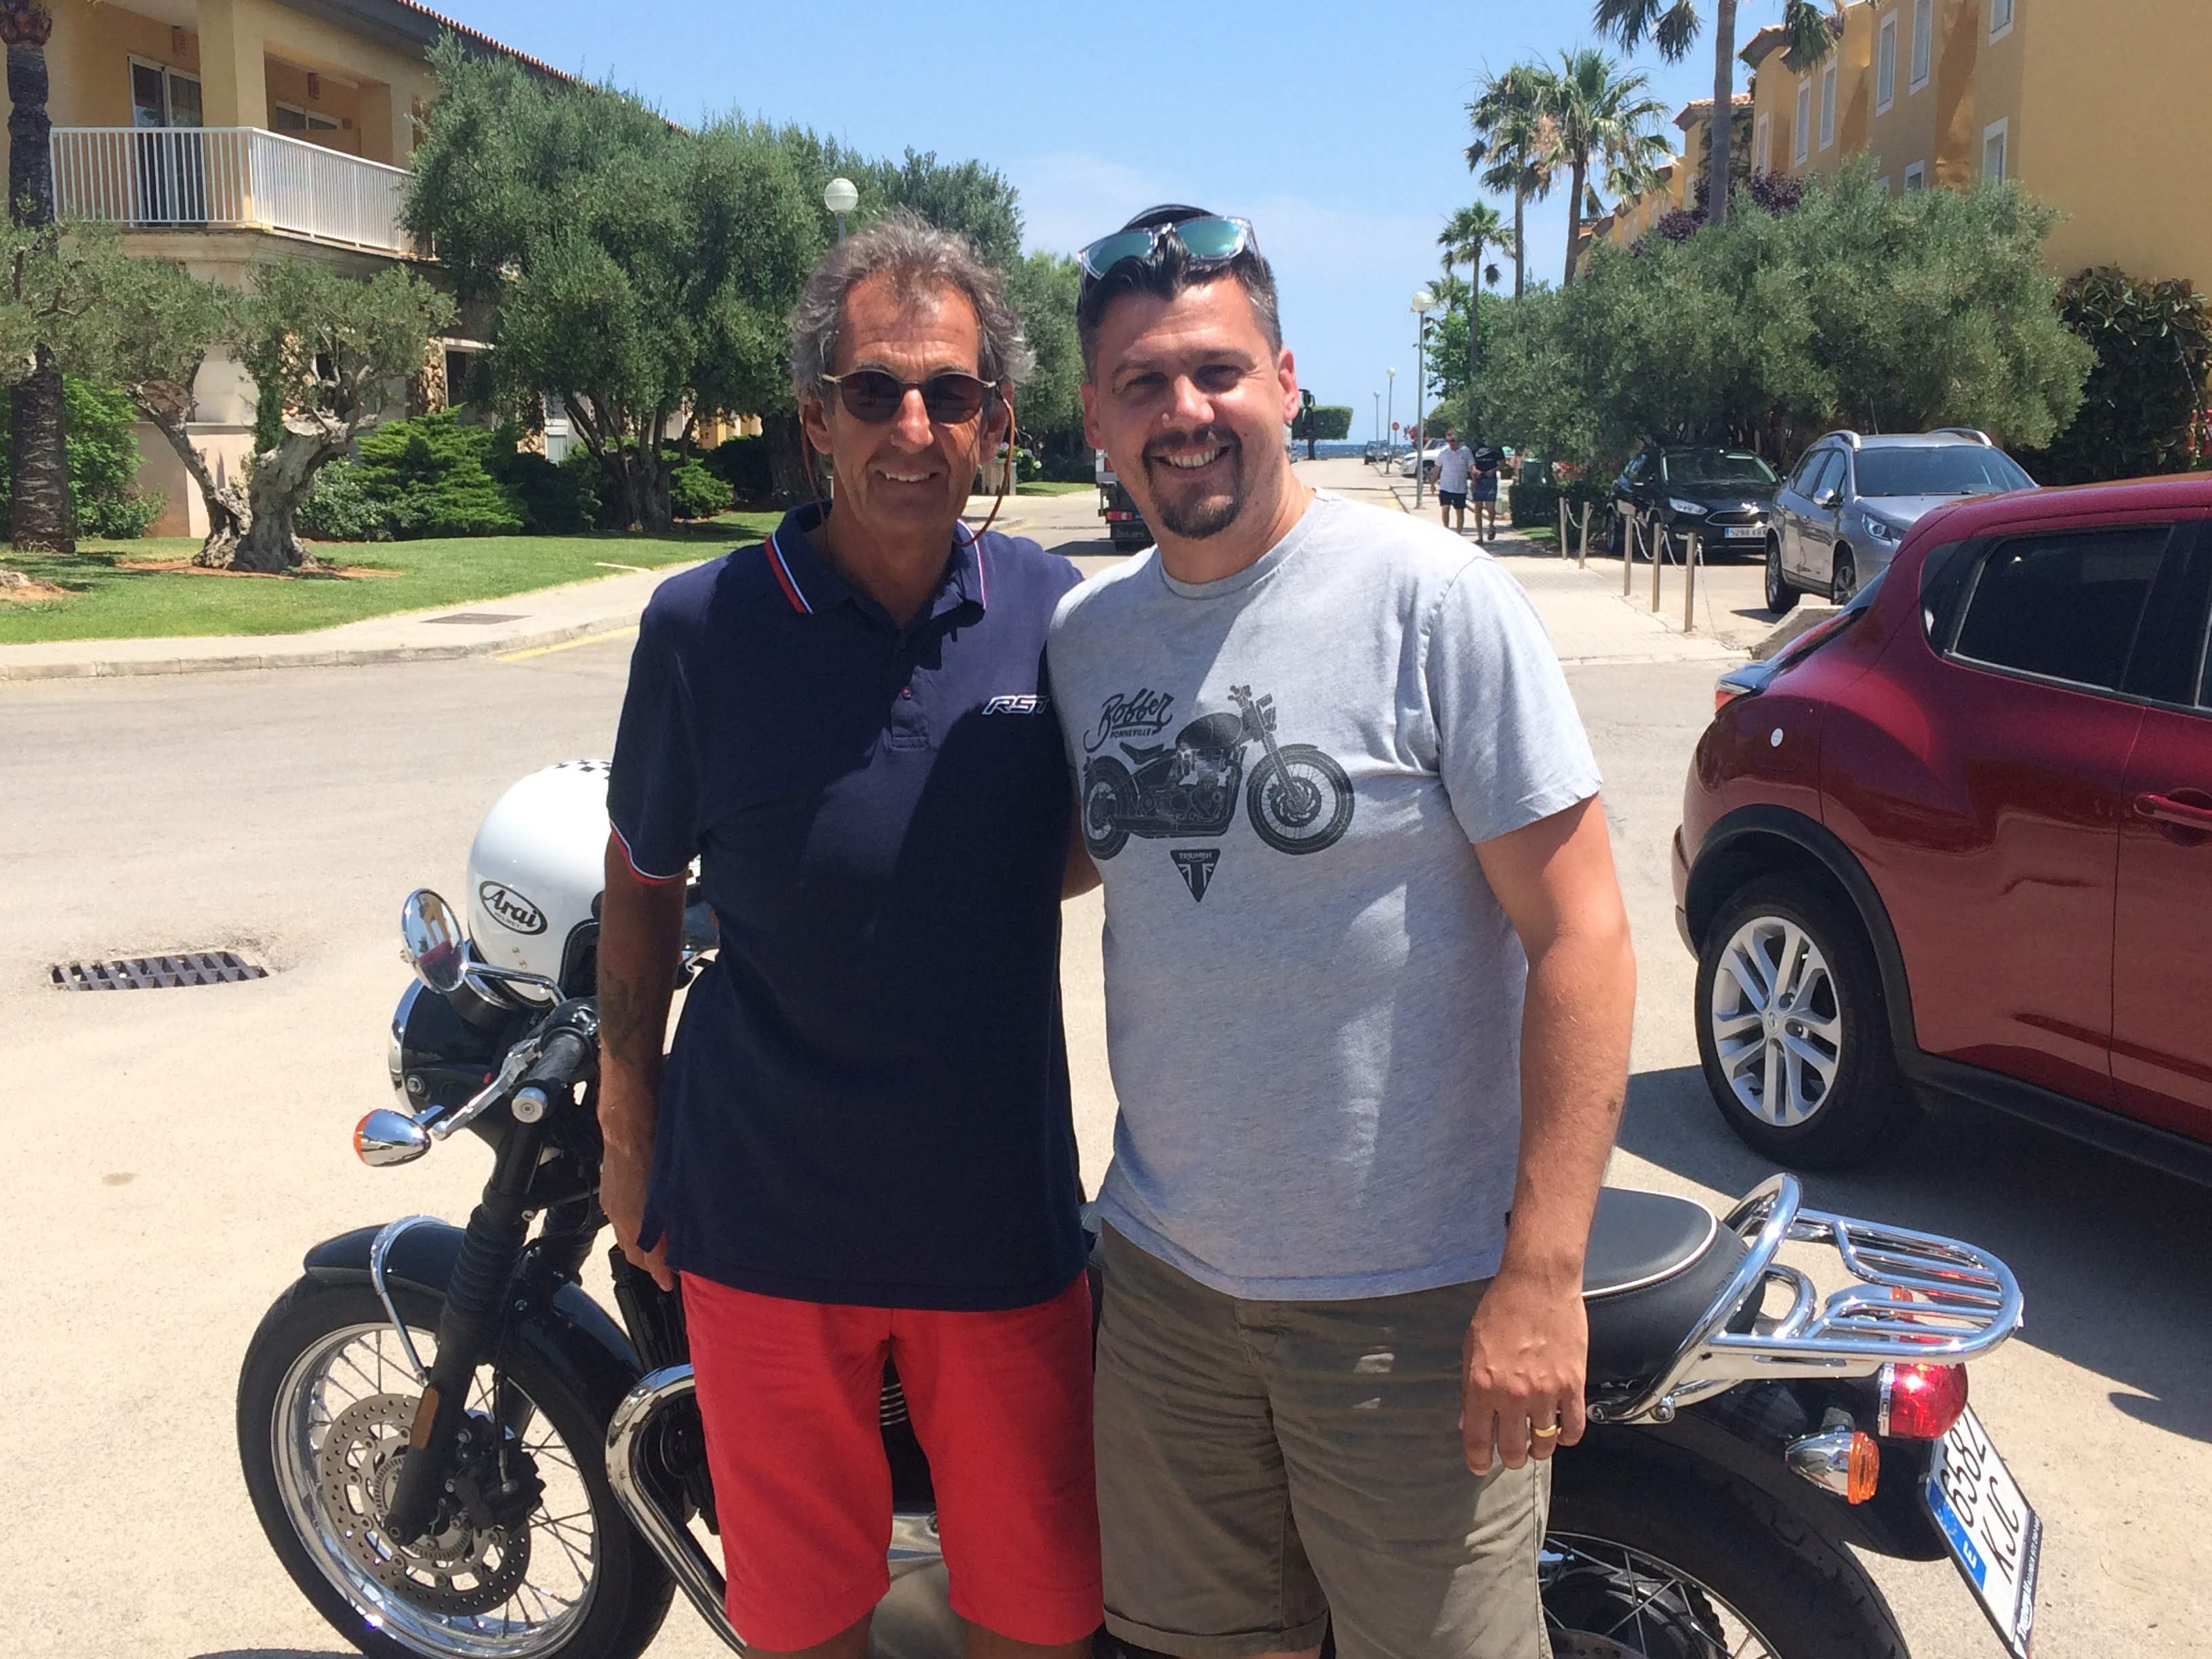 Gareth Bright and Steve Parrish in Mallorca, June 2018